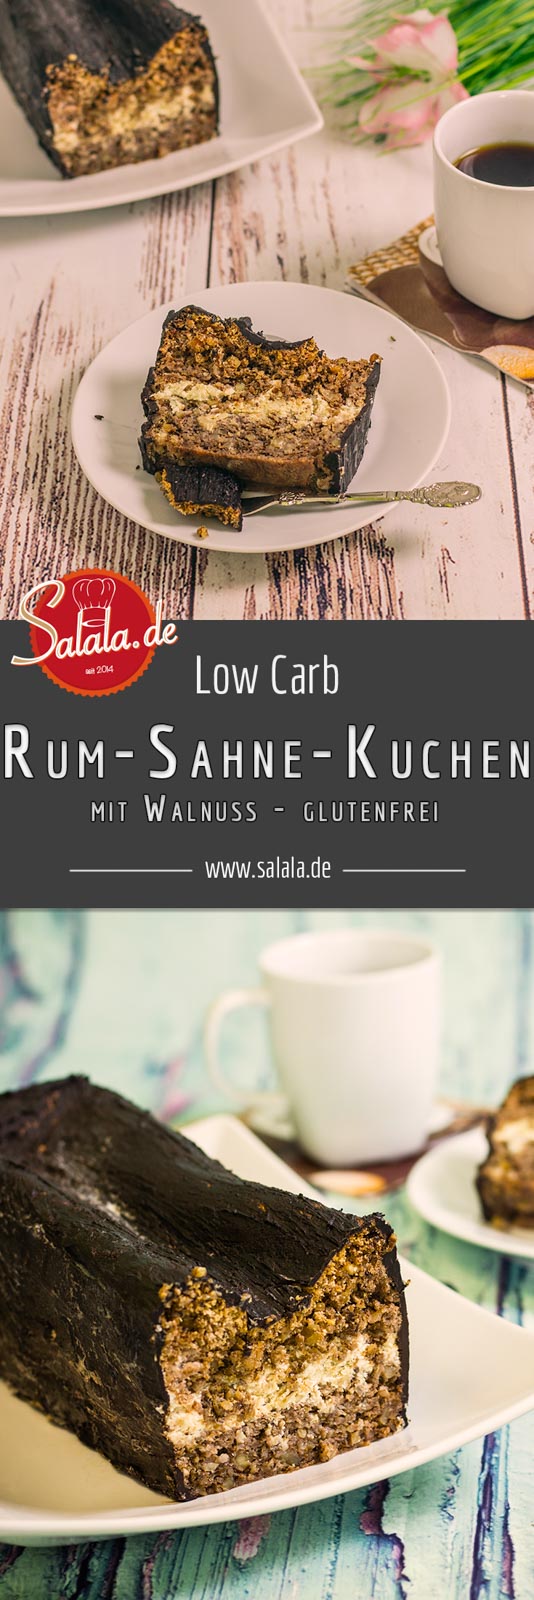 Walnuss-Rum-Kuchen low carb und ohne Mehl - by salala.de - Kuchen mit Rum-Sahne und Schokoglasur, zuckerfrei, glutenfrei backen